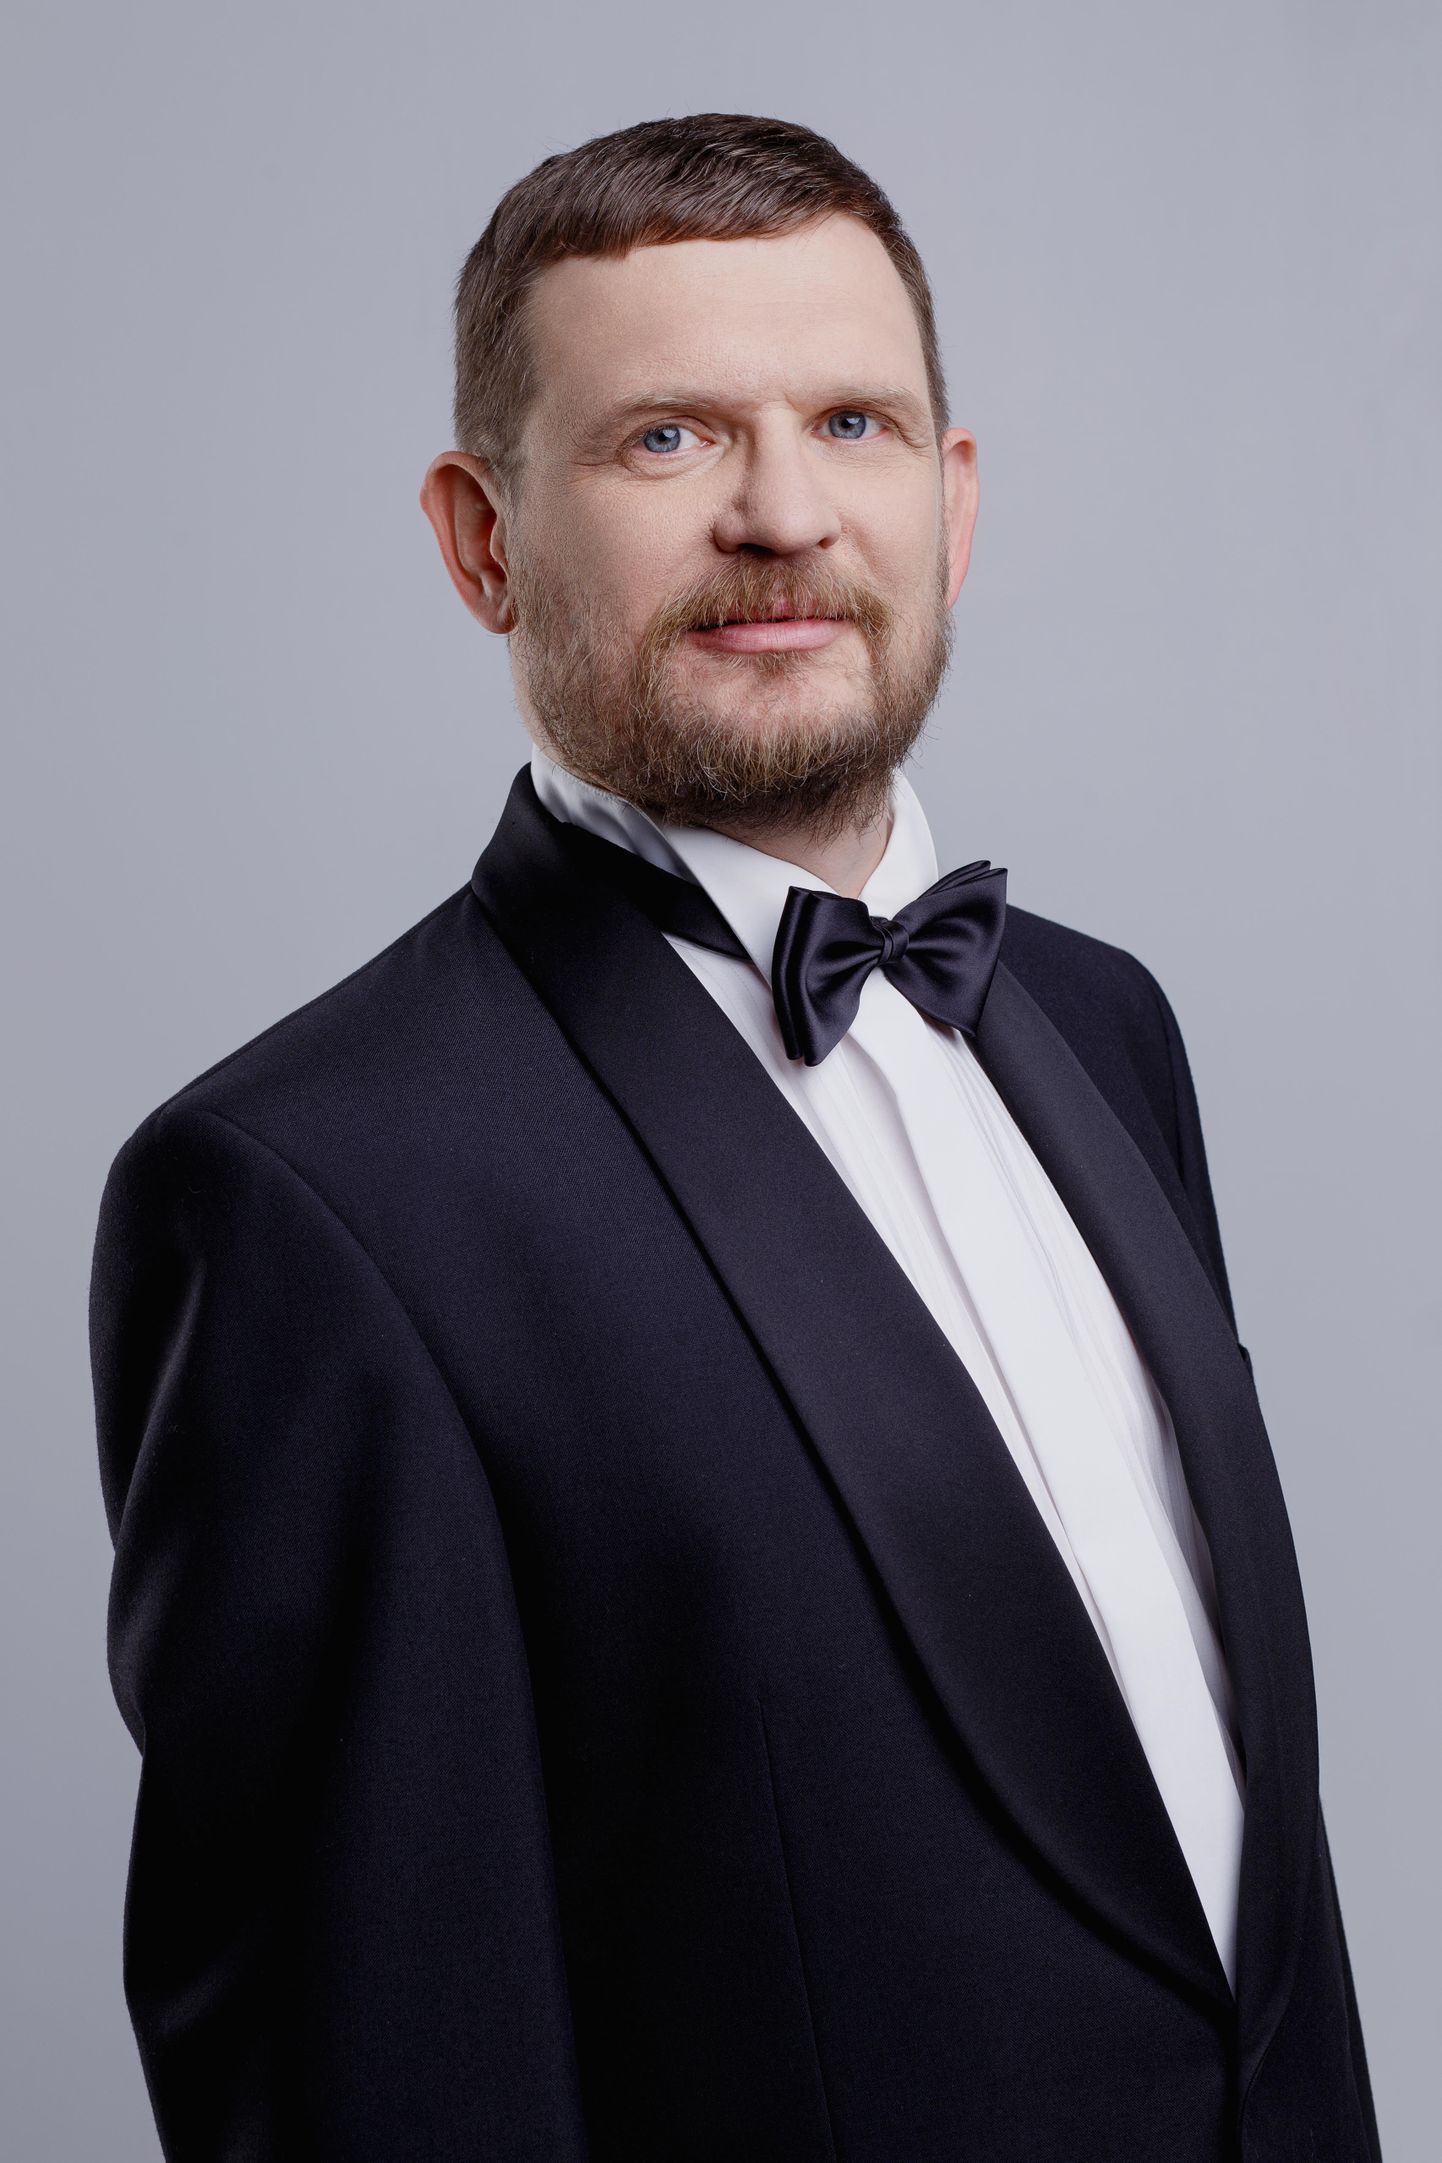 Поющий программист Алексей Бляхин считает, что самый благодарный слушатель тот, кто, приходя на концерт, еще не знает, что опера - это очень интересно.